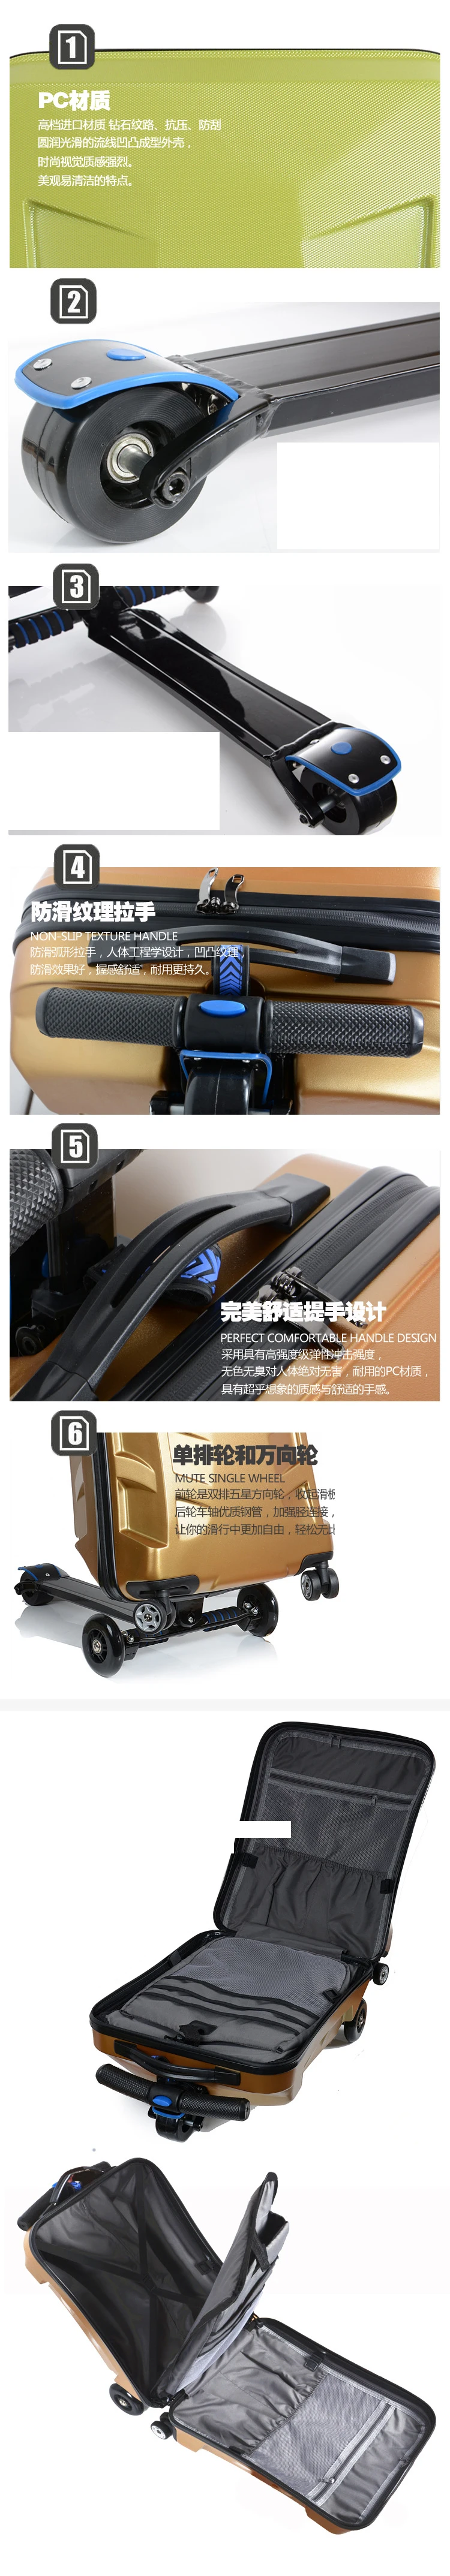 Carrylove 2" ABS скутер тележка чемодан кабина чемодан ленивый дорожная сумка для поездки